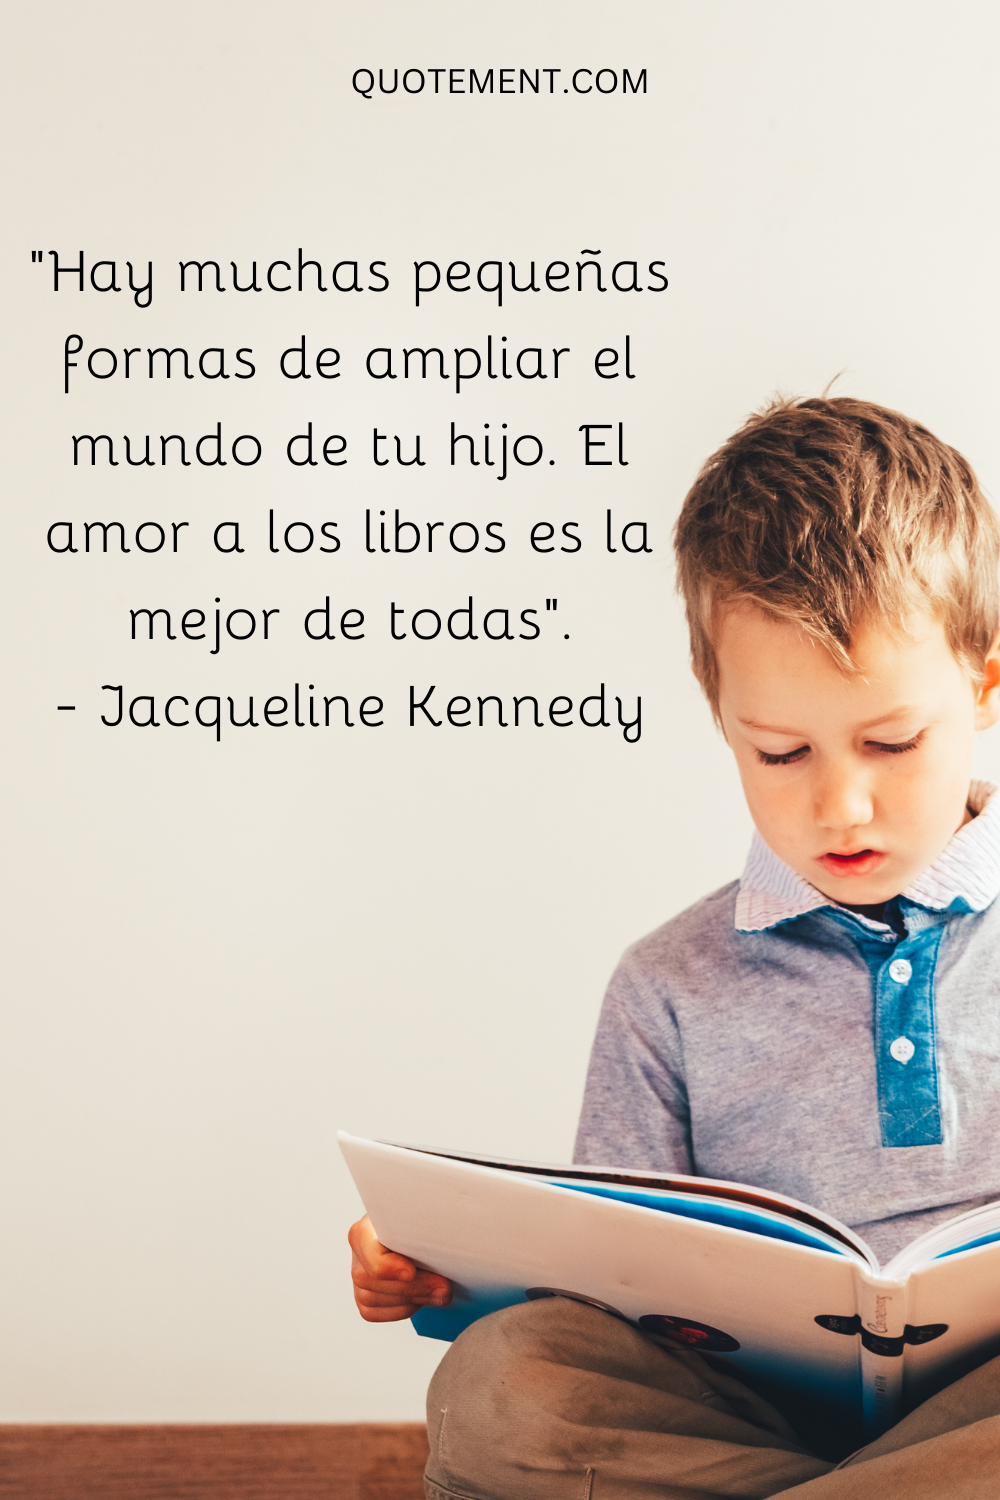 "Hay muchas pequeñas formas de ampliar el mundo de tu hijo. El amor por los libros es la mejor de todas". - Jacqueline Kennedy